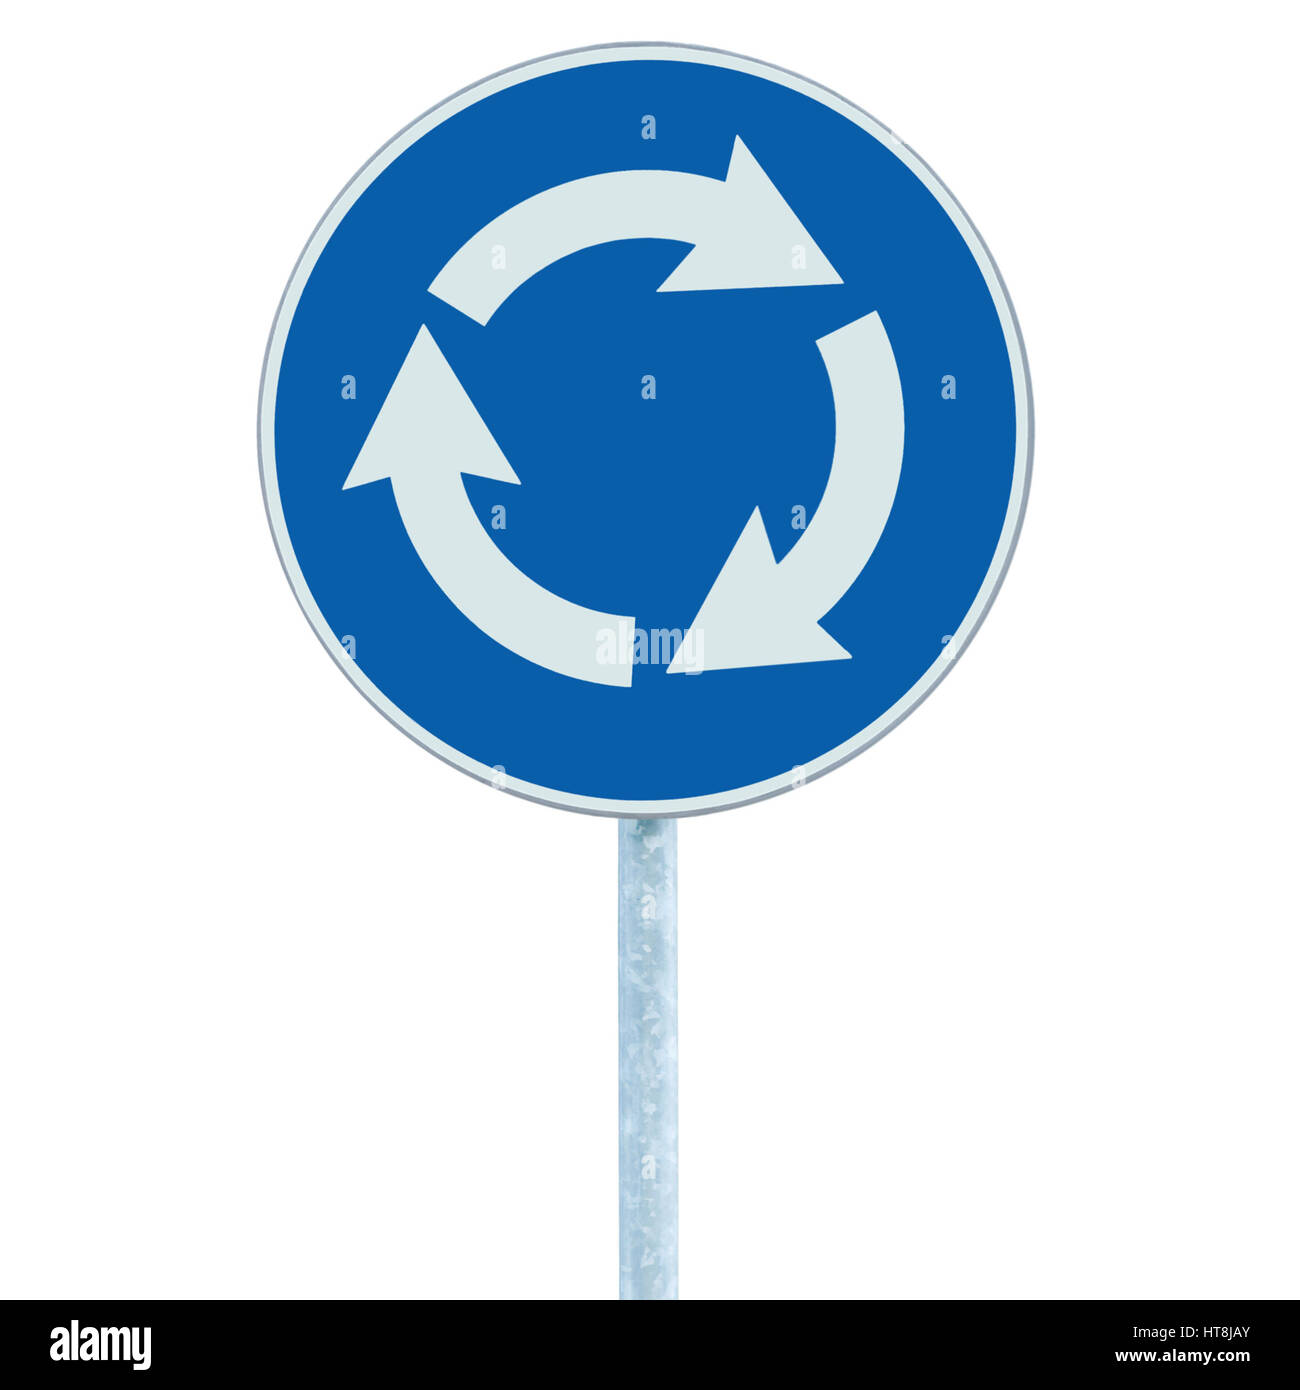 Rond-point de la route carrefour signe isolé, bleu, flèches blanches main gauche Banque D'Images